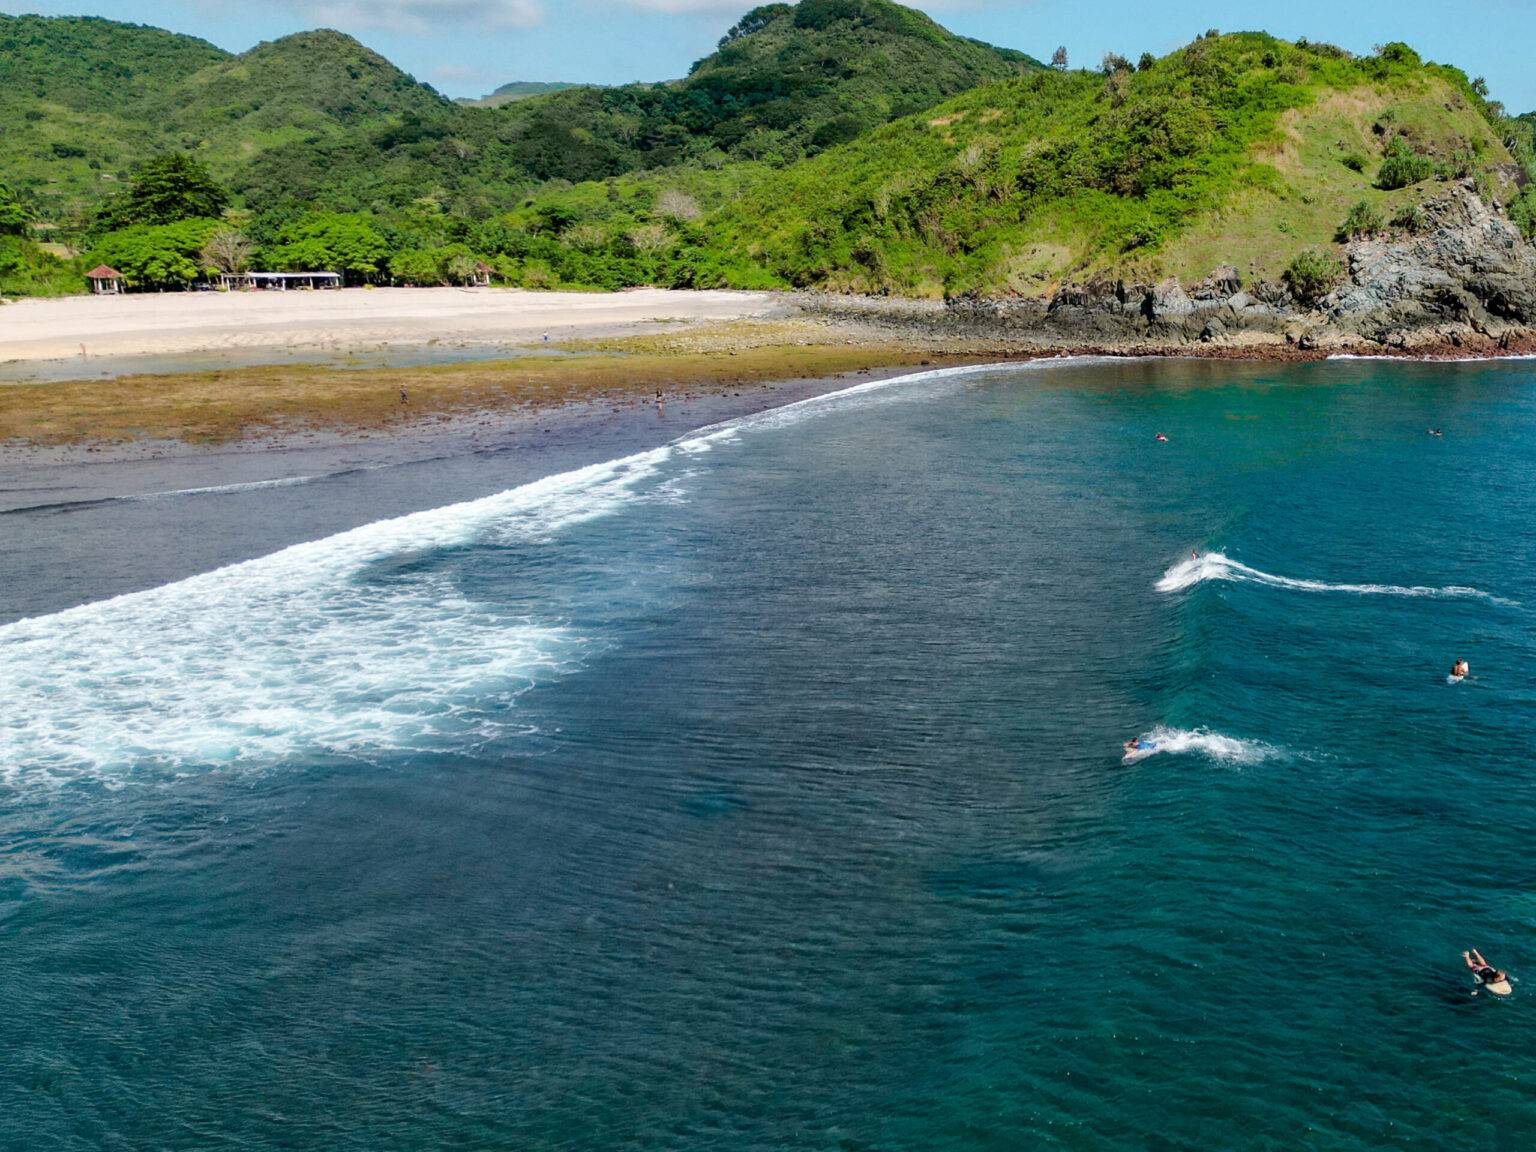 Am Mawi Beach auf Lombok trifft man meistens nur fortgeschrittene Surfer im Wasser.